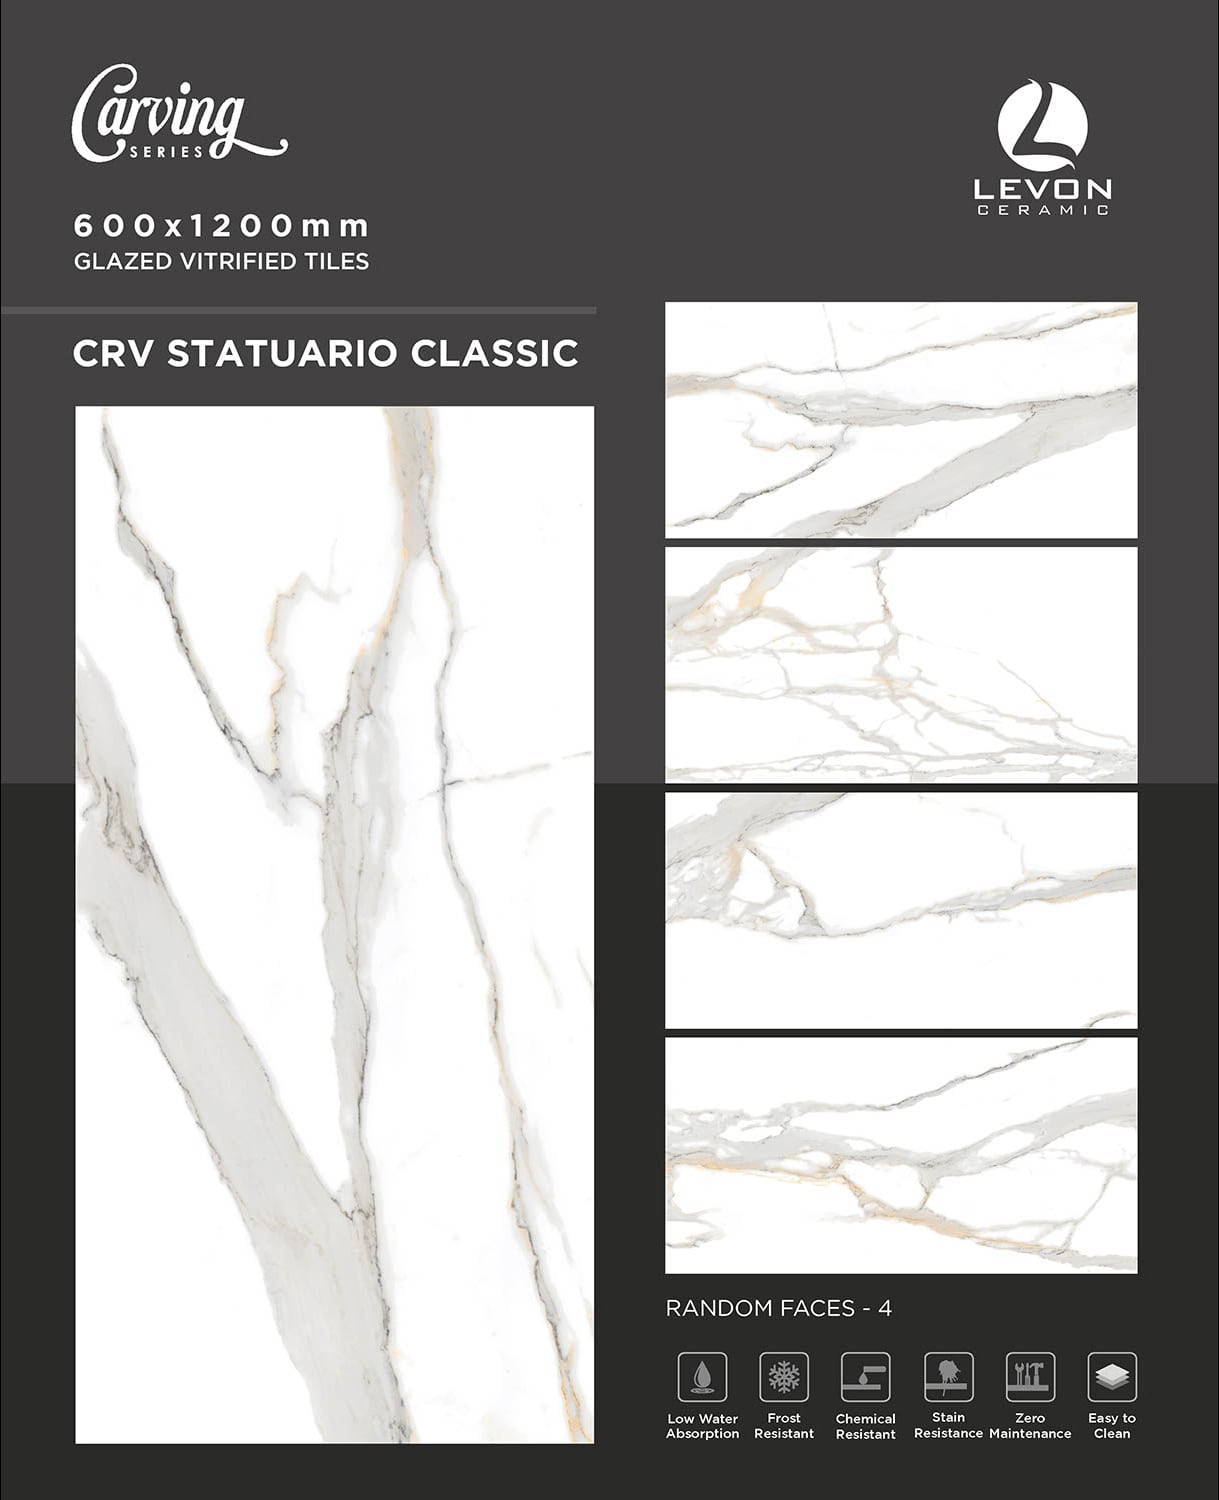 CRV Classic CRV Statuario - Product